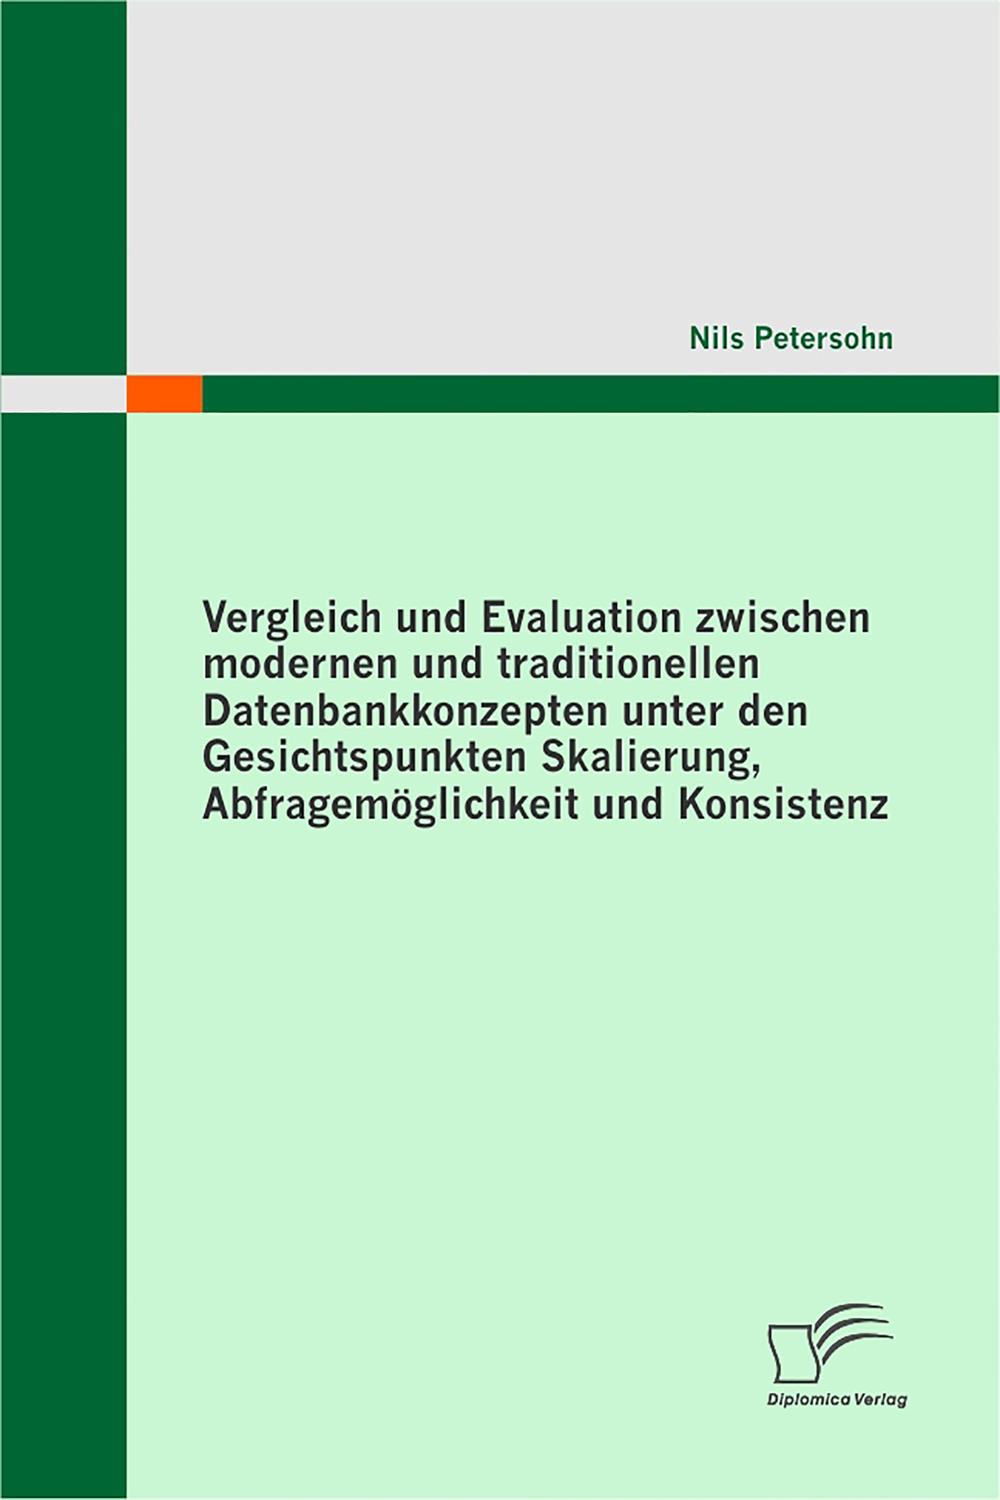 Vergleich und Evaluation zwischen modernen und traditionellen Datenbankkonzepten unter den Gesichtspunkten Skalierung, Abfragemöglichkeit und Konsistenz - Nils Petersohn